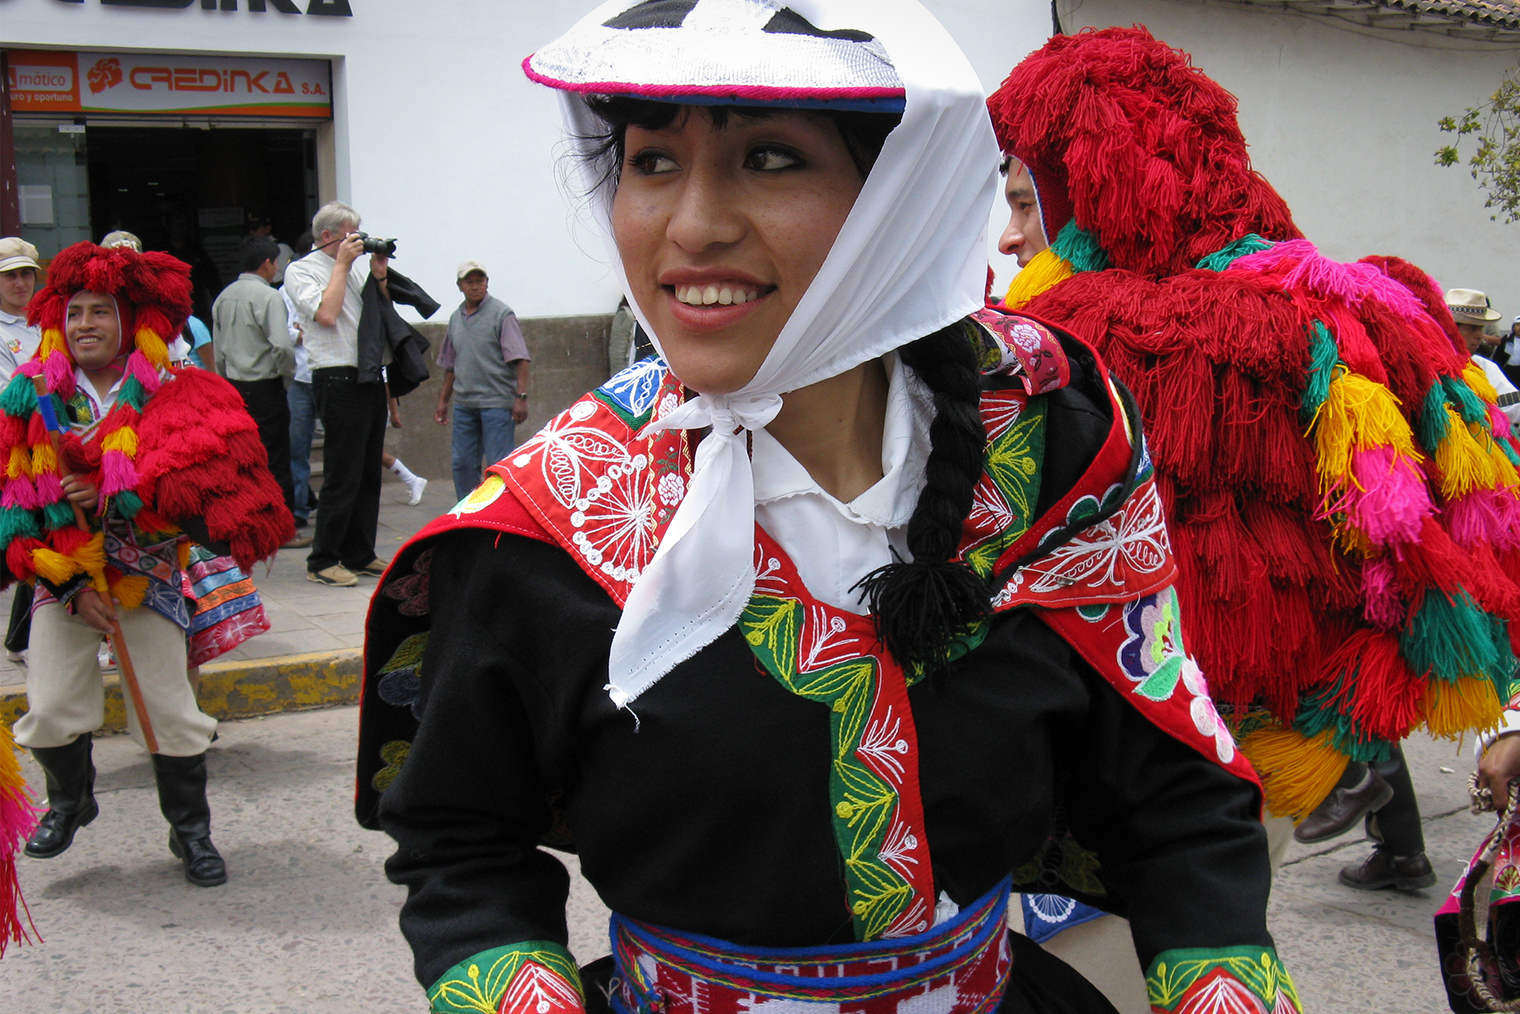 Перуанцы охотно позируют, многие любят фотографироваться с туристами. Но я предпочитаю заранее спросить согласия на съемку